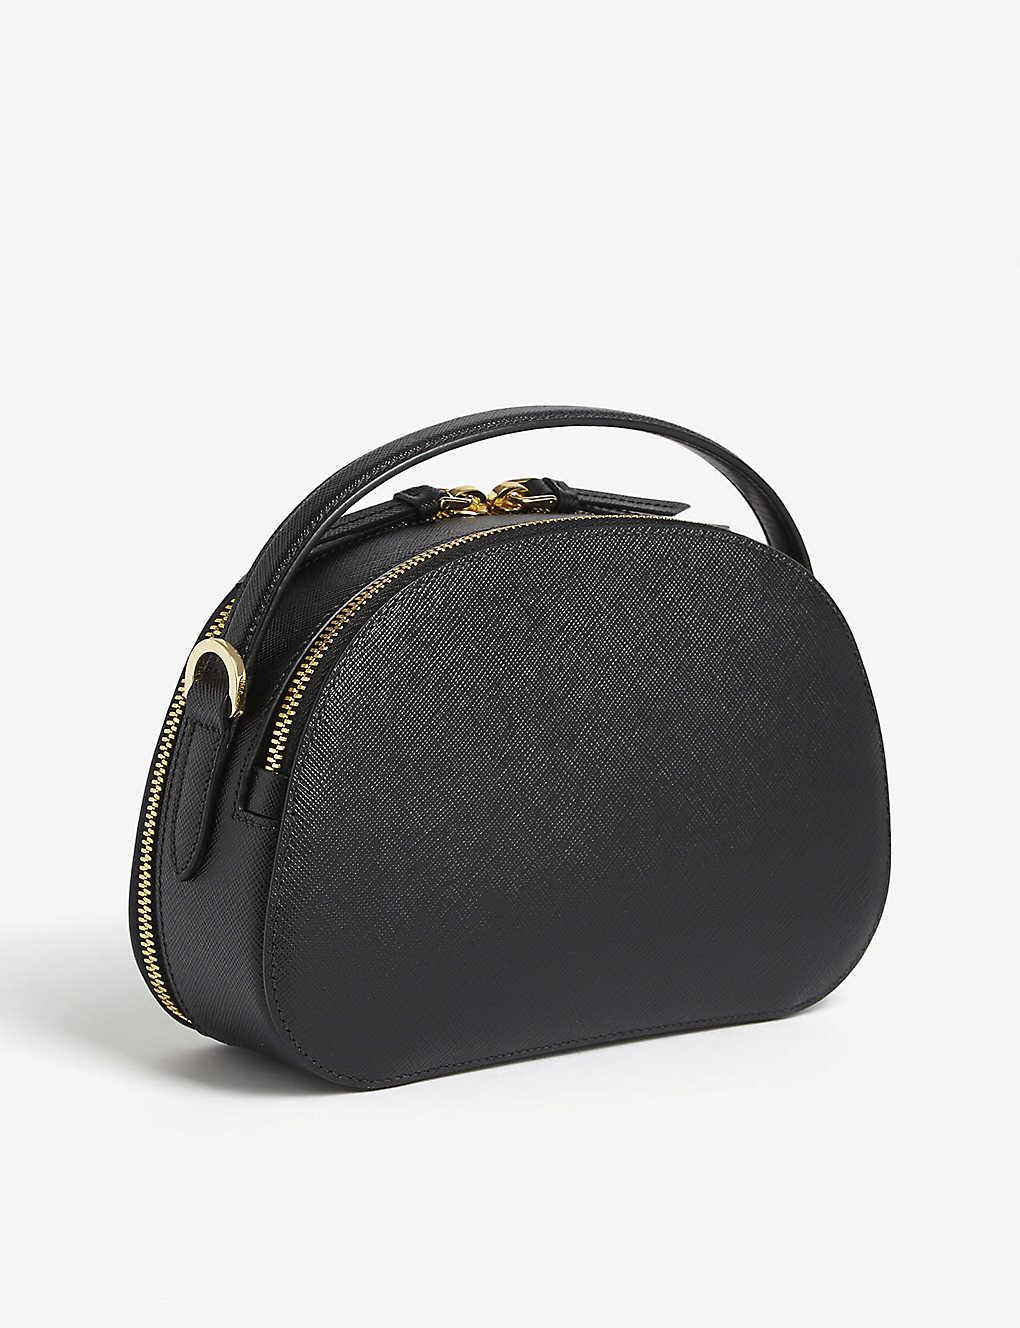 PRADA Saffiano Lux Odette Belt Bag Black 626441